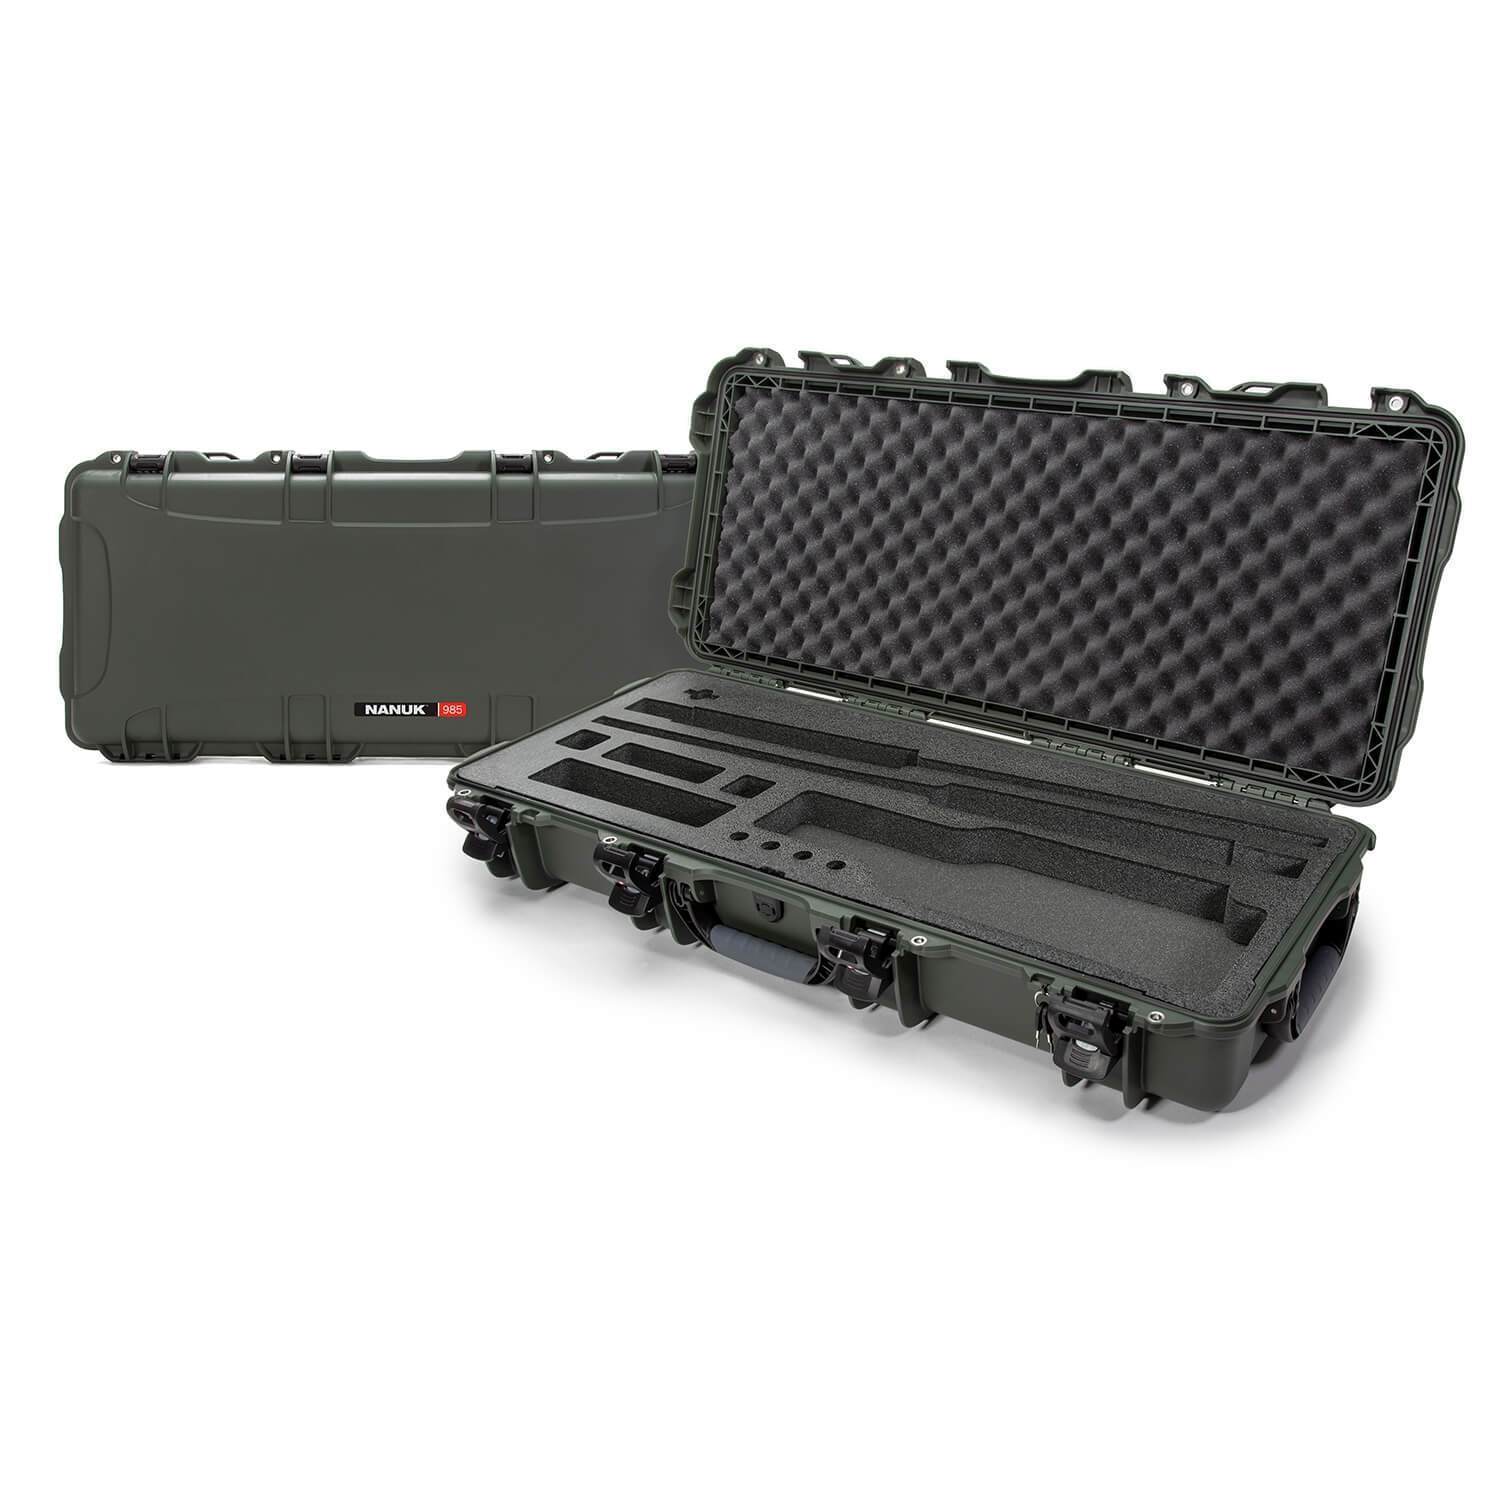 NANUK 985 valise de fusil de chasse démonté - valise de fusil de chasse en direct - NANUK